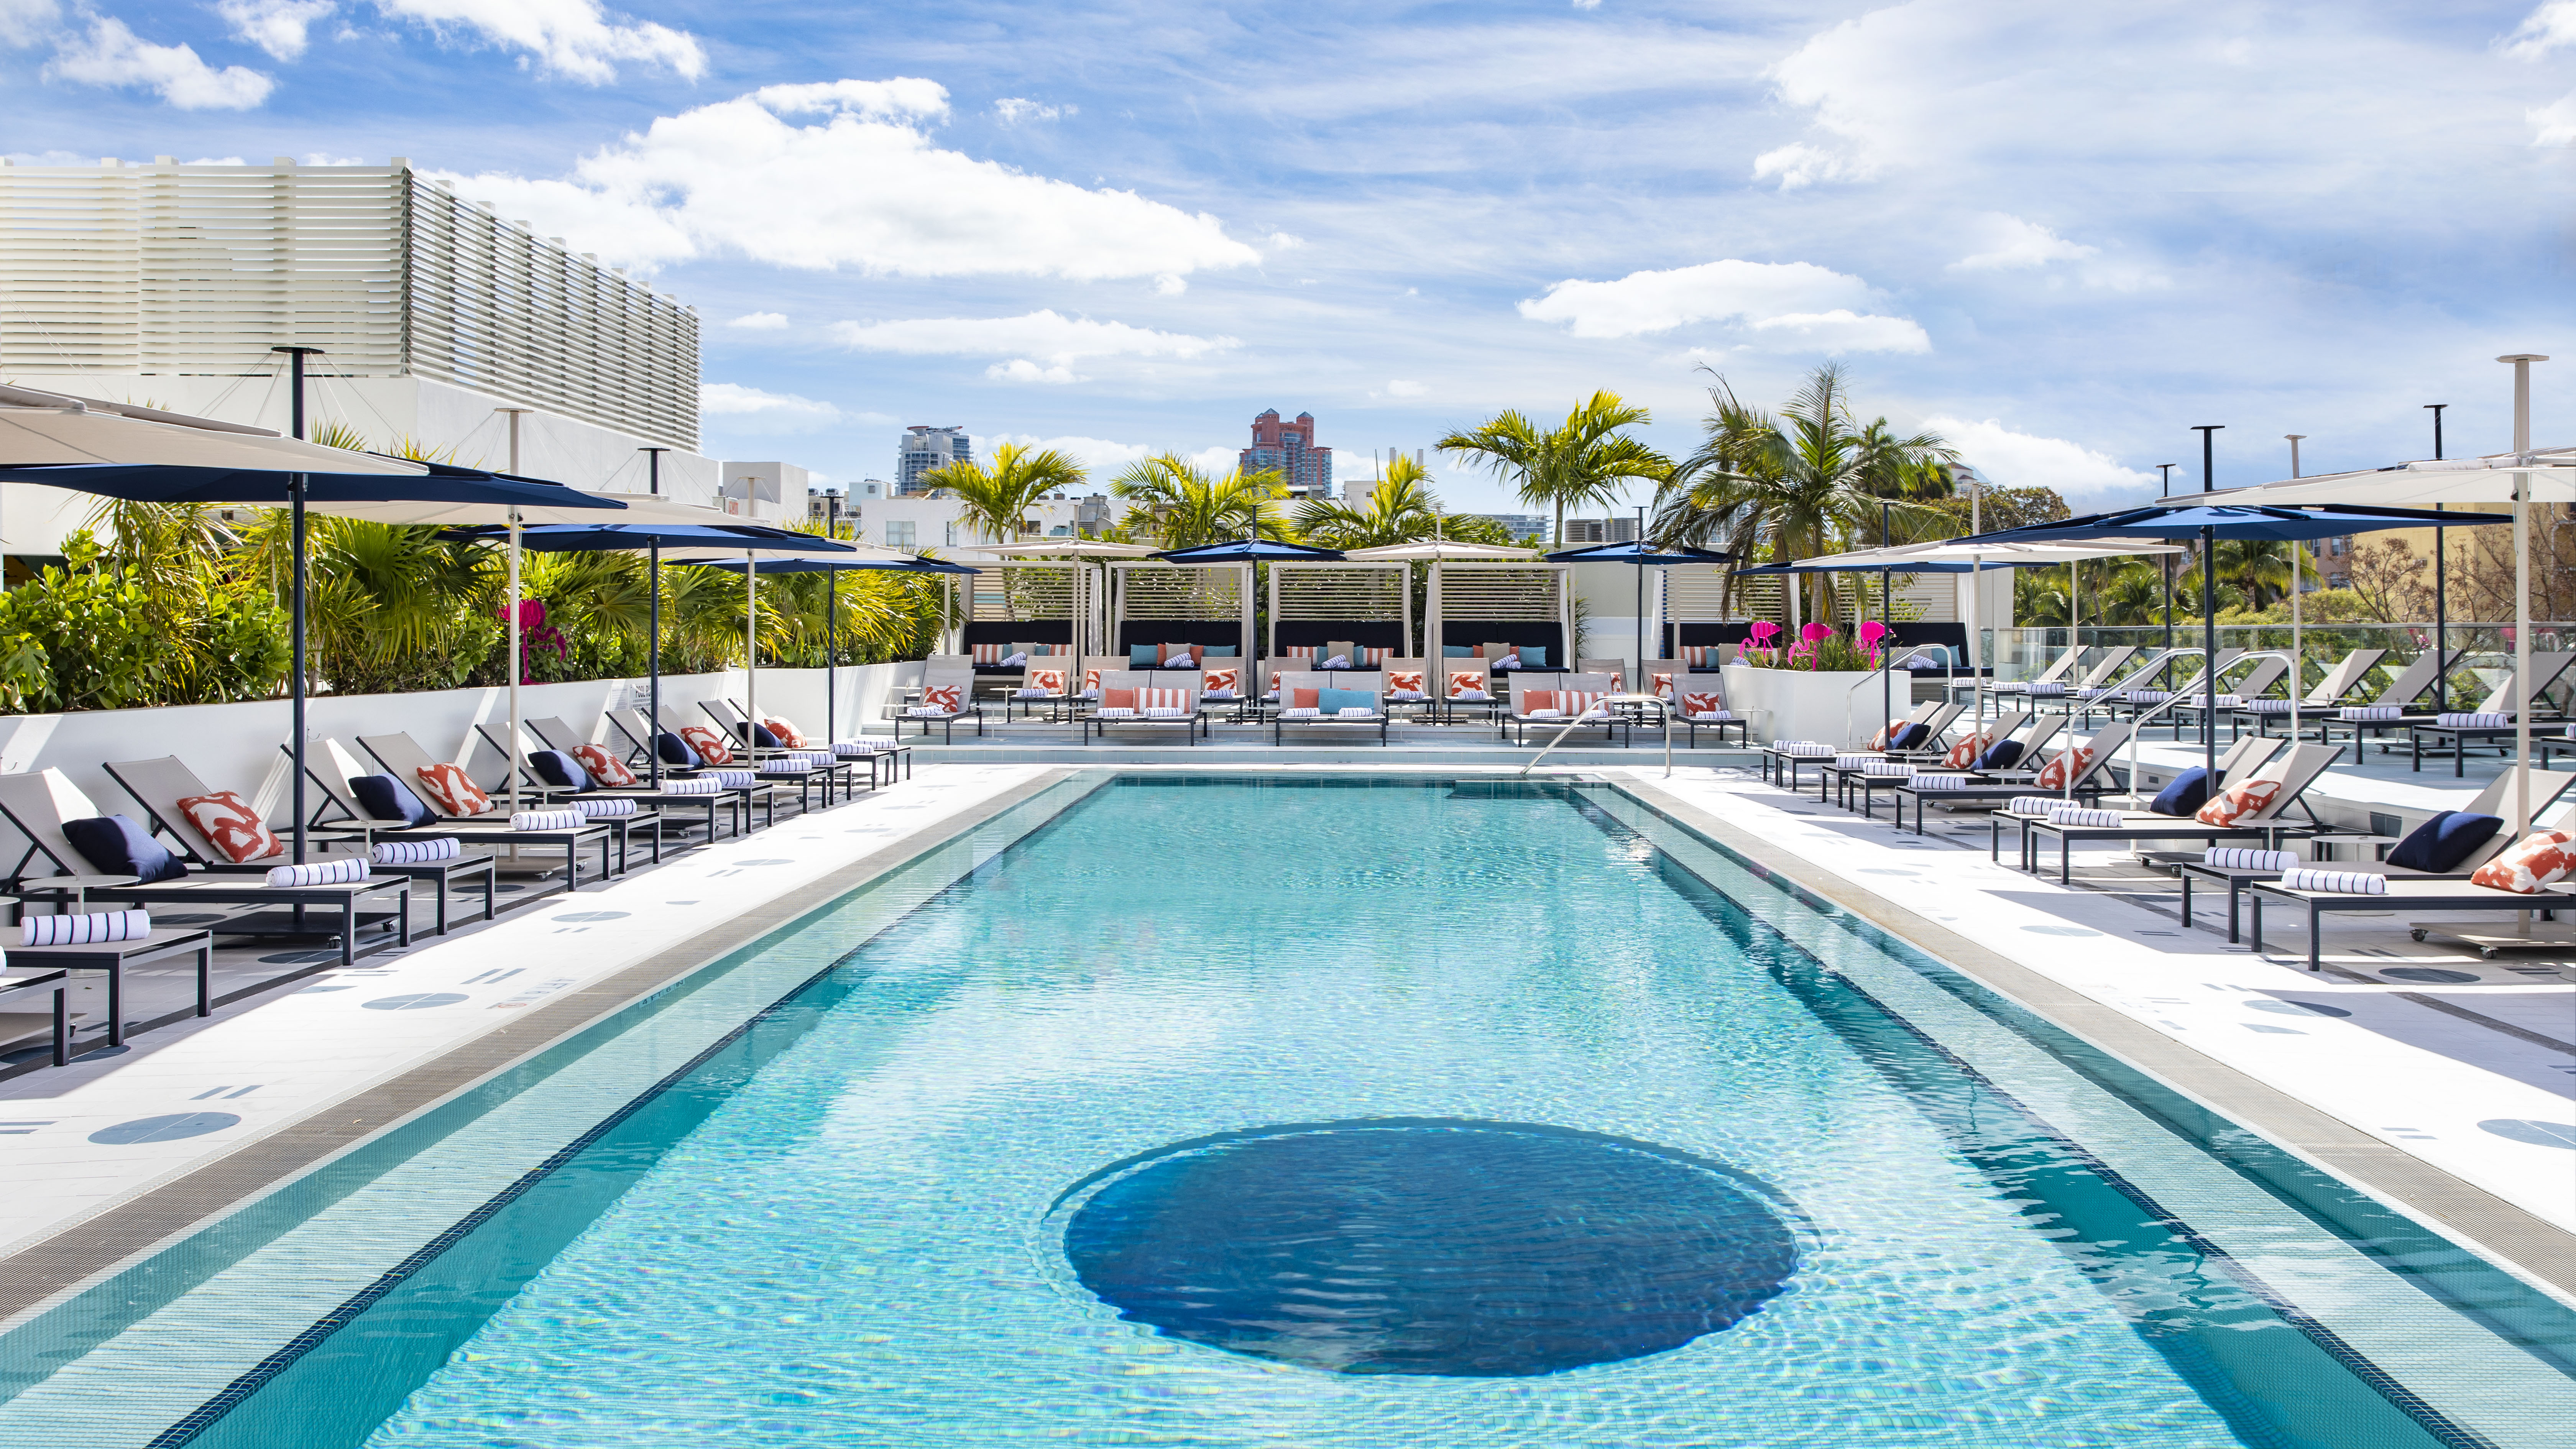 Das Moxy Hotel in Miami verfügt über einen Pool und eine Bar auf dem Dach